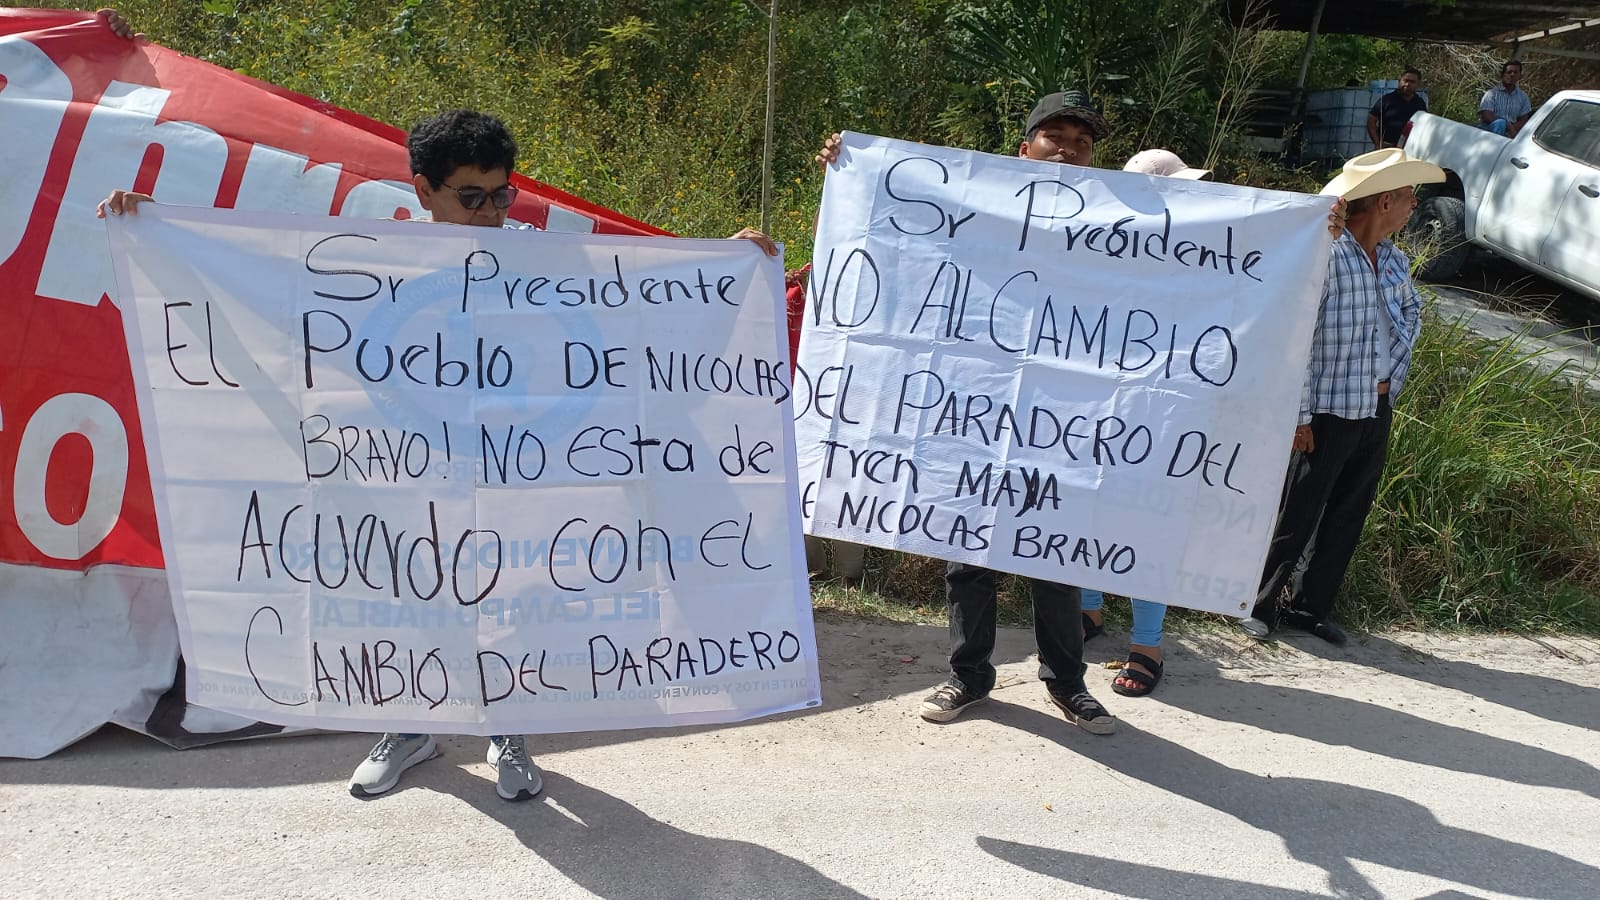 Exigen ejidatarios de Nicolás Bravo un paradero del Tren Maya, piden los atienda Amlo 